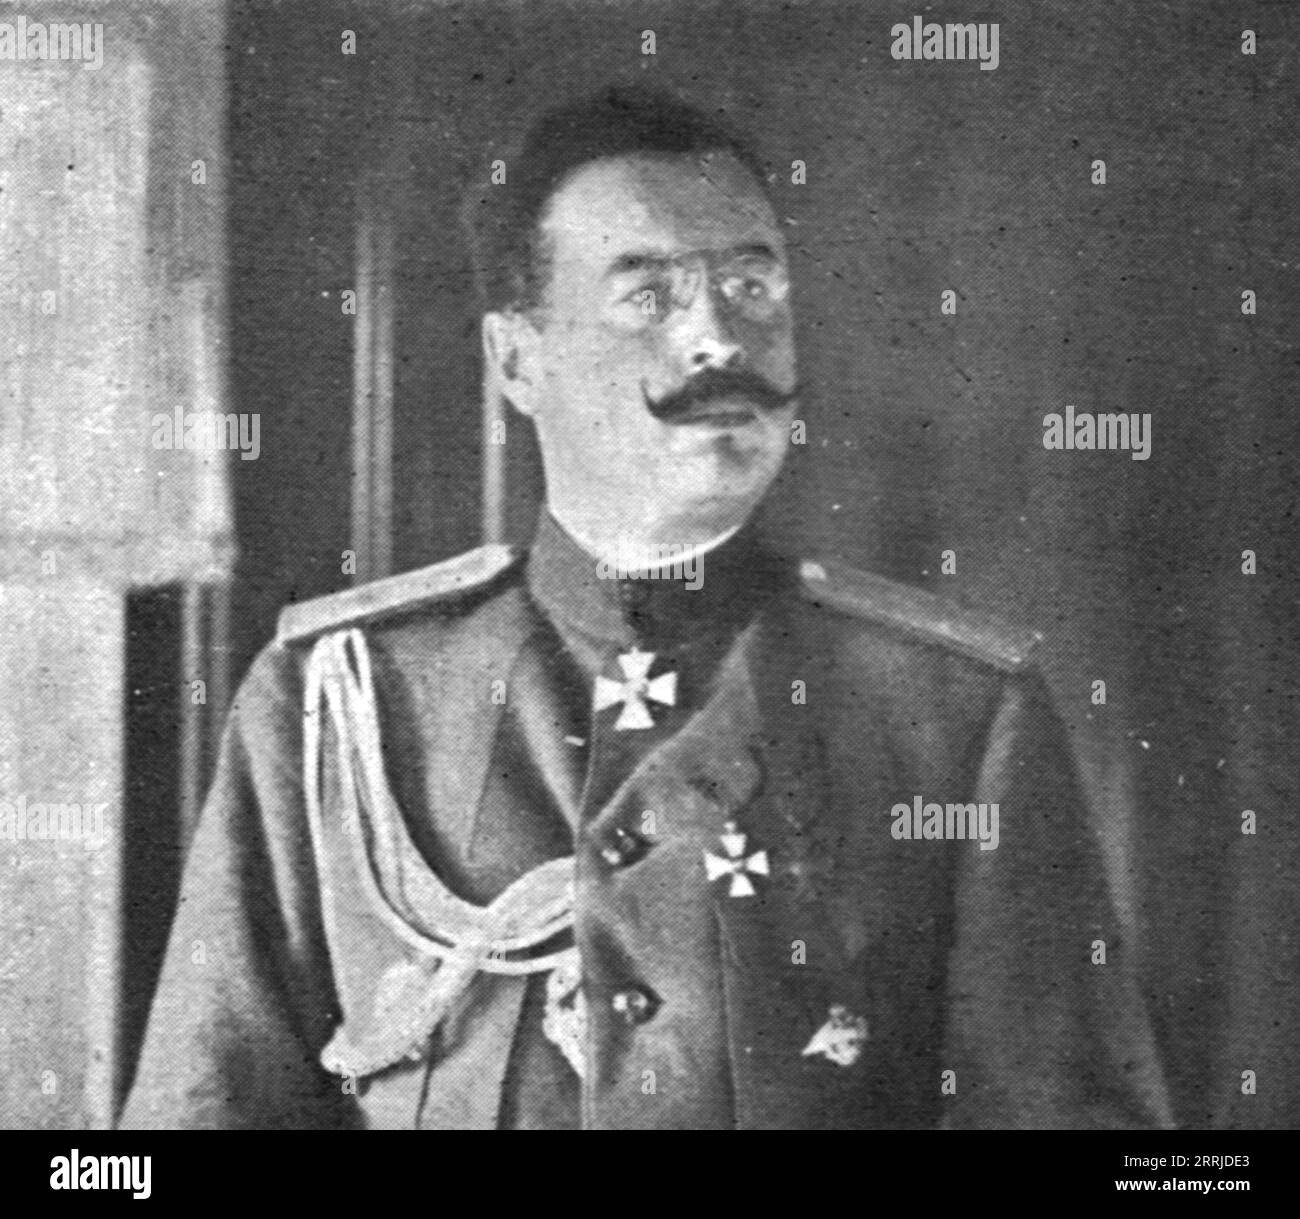 Auflösung der Ostfront; General Duchonin, ermordet am 4. Dezember 1917 in Mohilev, 1917. Aus L’Album de la Guerre 1914-1919, Band 2 [L’Illustration, Paris, 1924]. Stockfoto